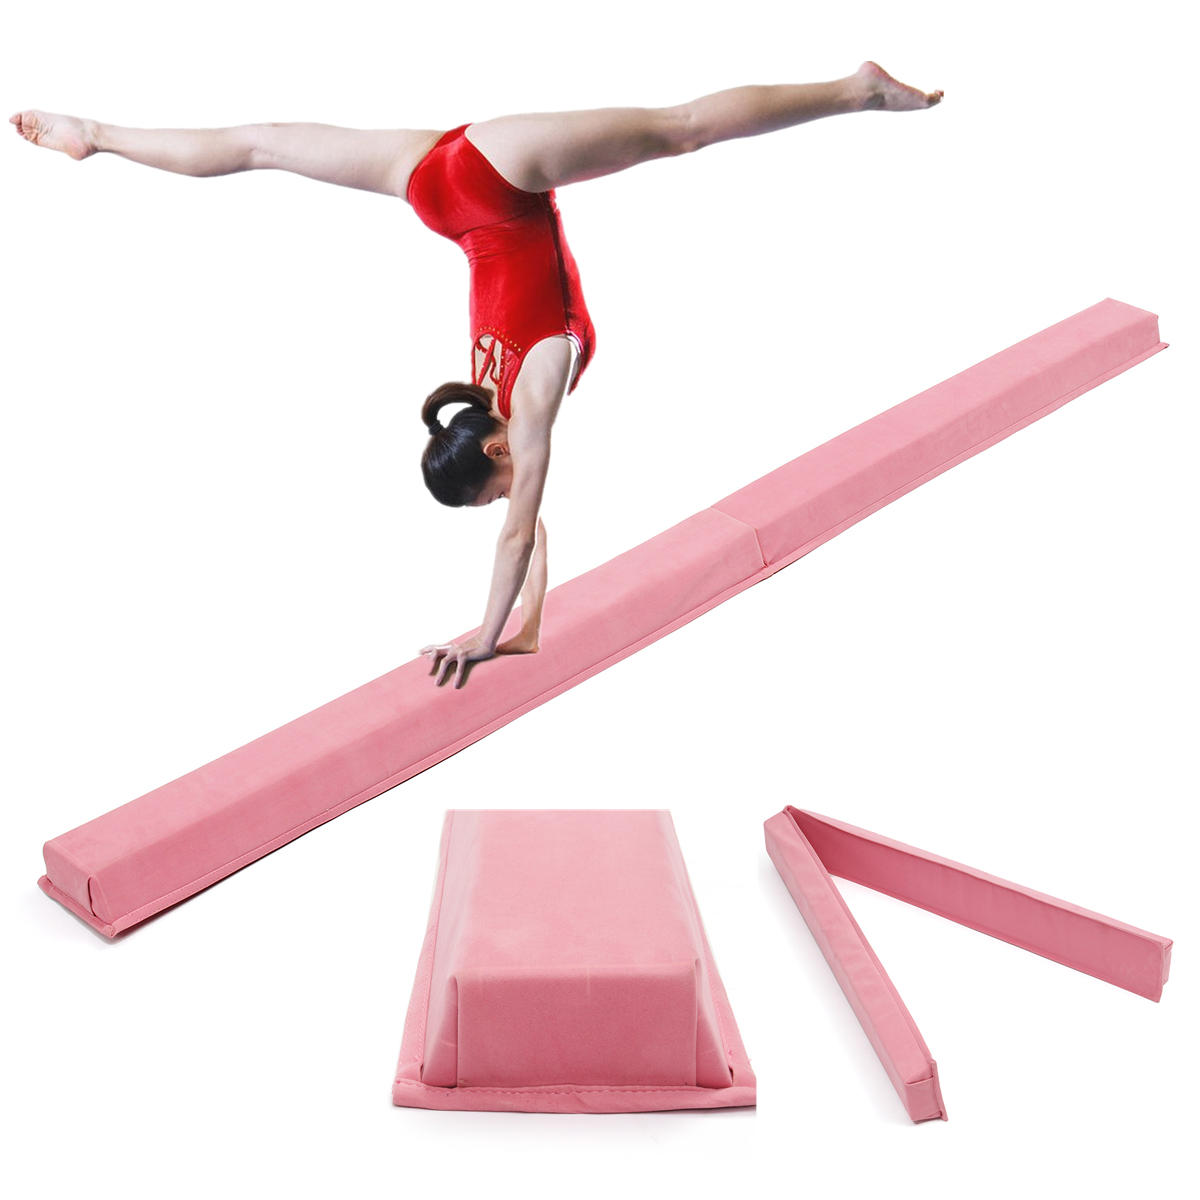 Colchoneta rosa de equilibrio de gimnasia profesional para adultos y niños de 94,5x5,9 pulgadas para entrenamiento de habilidades y mejora del rendimiento.